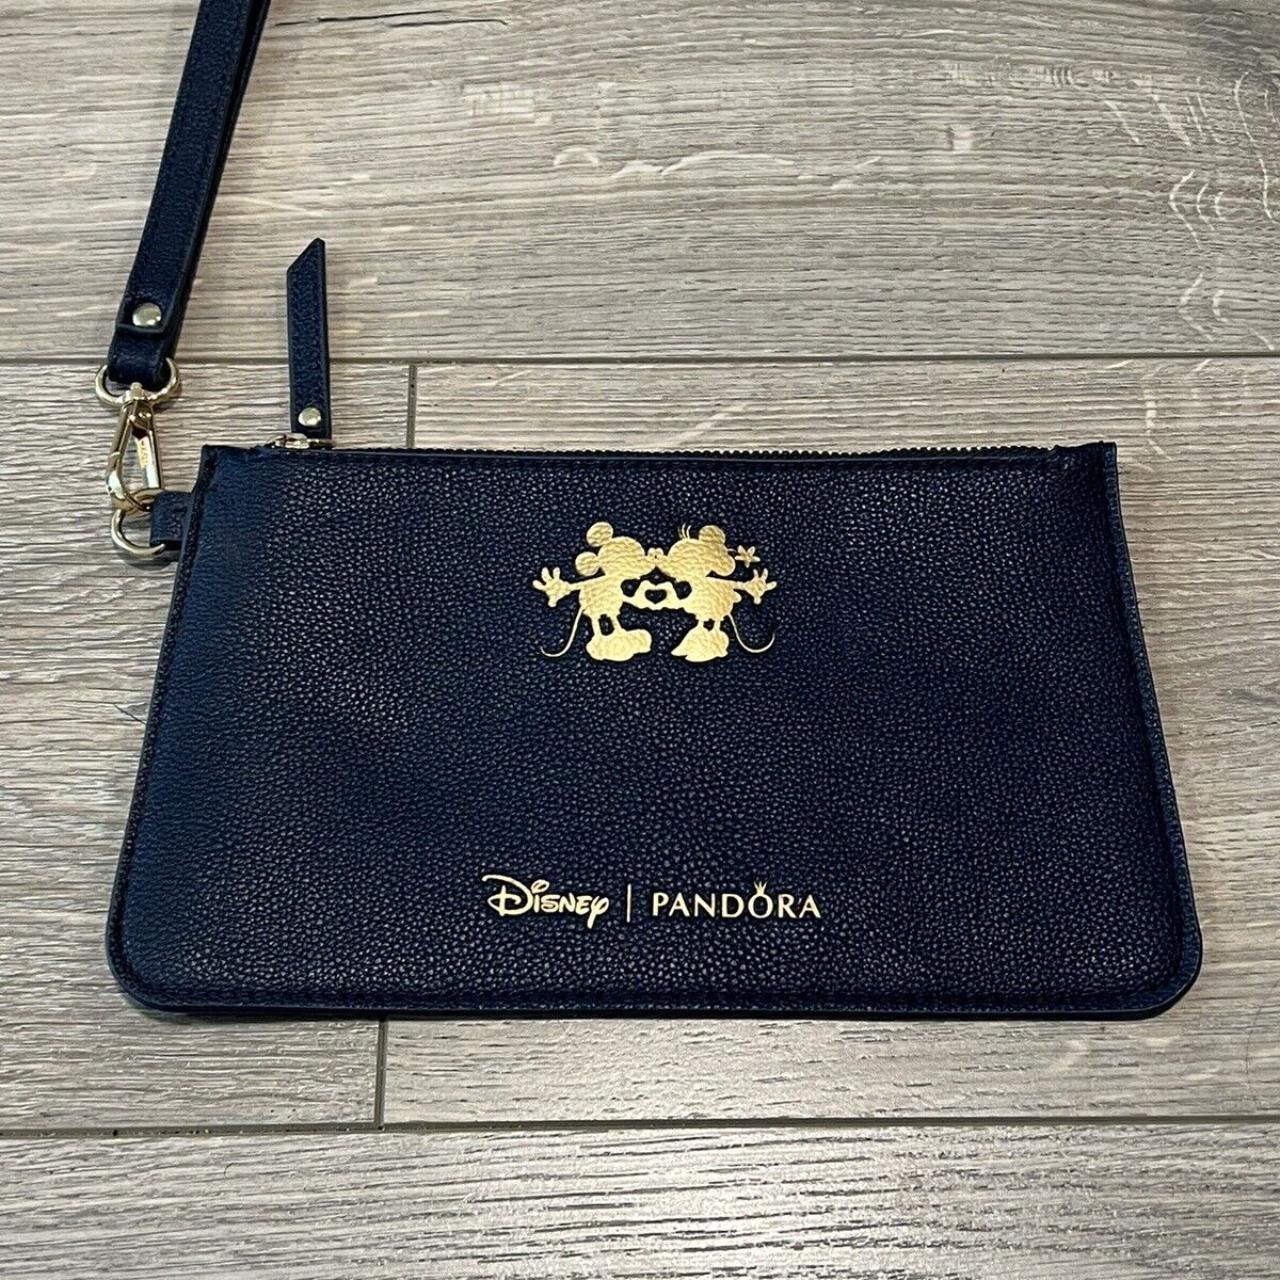 Product Image 4 - Disney Pandora Clutch Bag Zippered